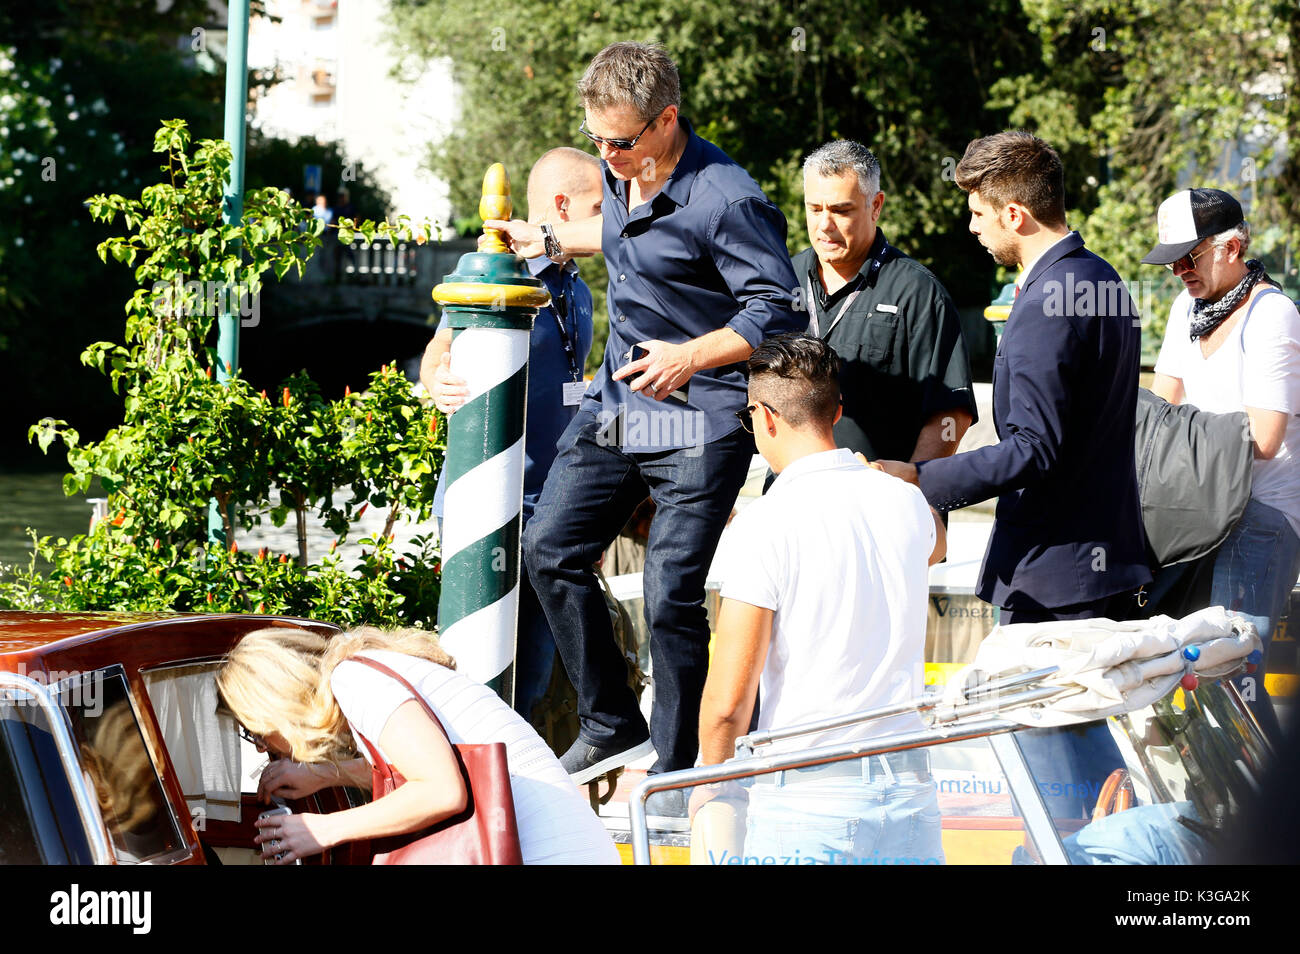 Matt Damon è visto lasciare l'hotel excelsior dopo concedere interviste durante la 74a Mostra del Cinema di Venezia il 01 settembre 2017 a Venezia, Italia Foto Stock